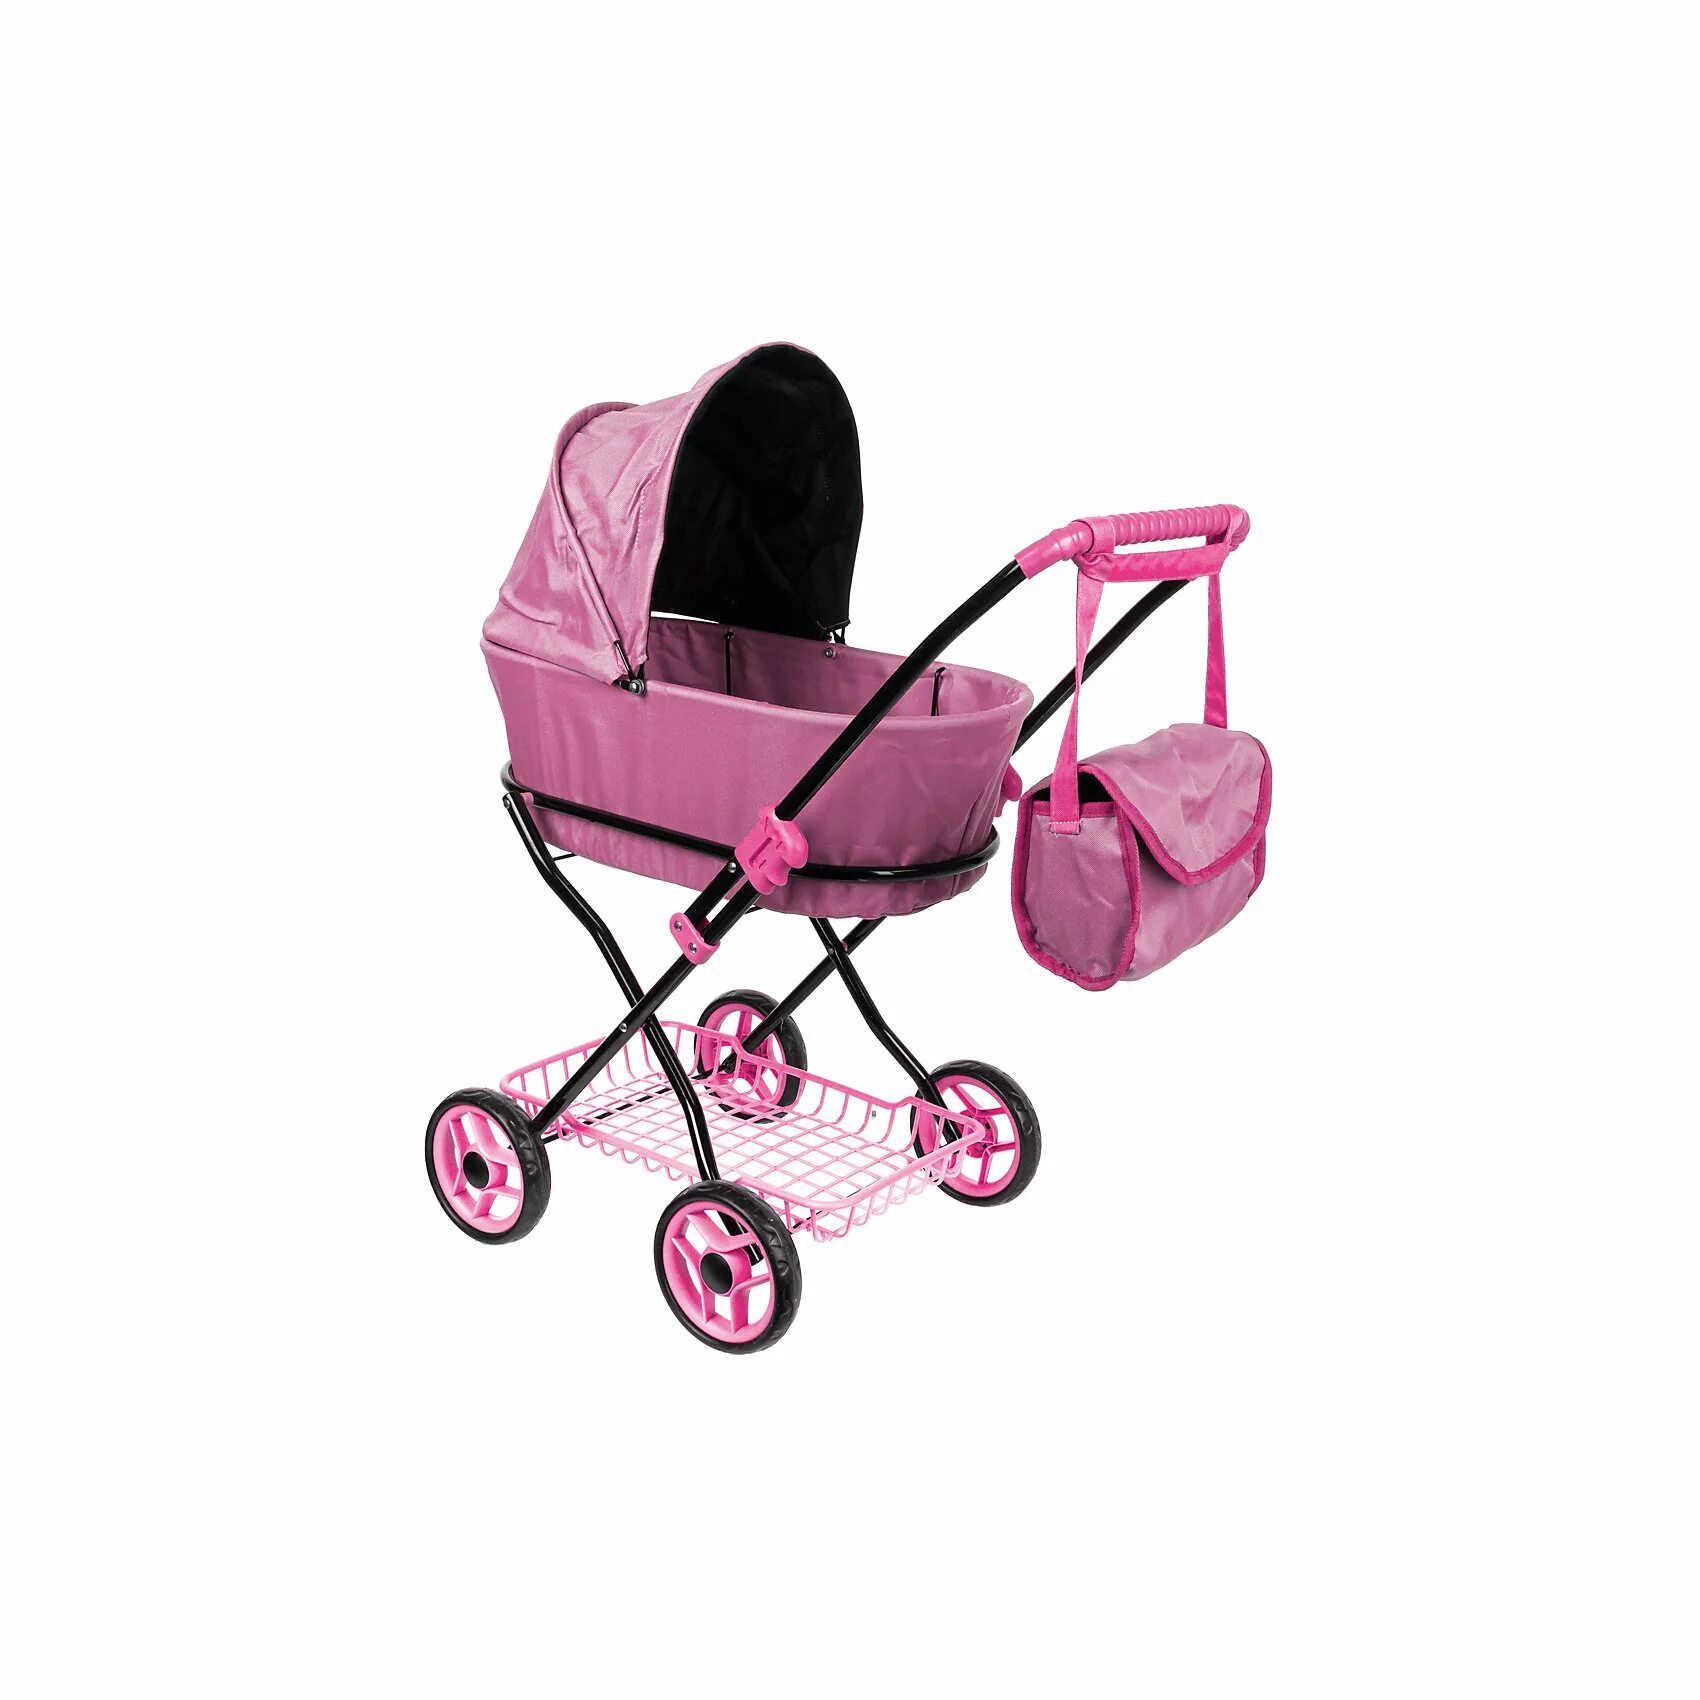 Детские коляски розовые. Buggy Boom коляска для кукол розовая Mixy. Коляска для куклы 8015-m2013 Микси,классическая Buggy Boom. Для коляски розовый. Коляска летняя розовая.